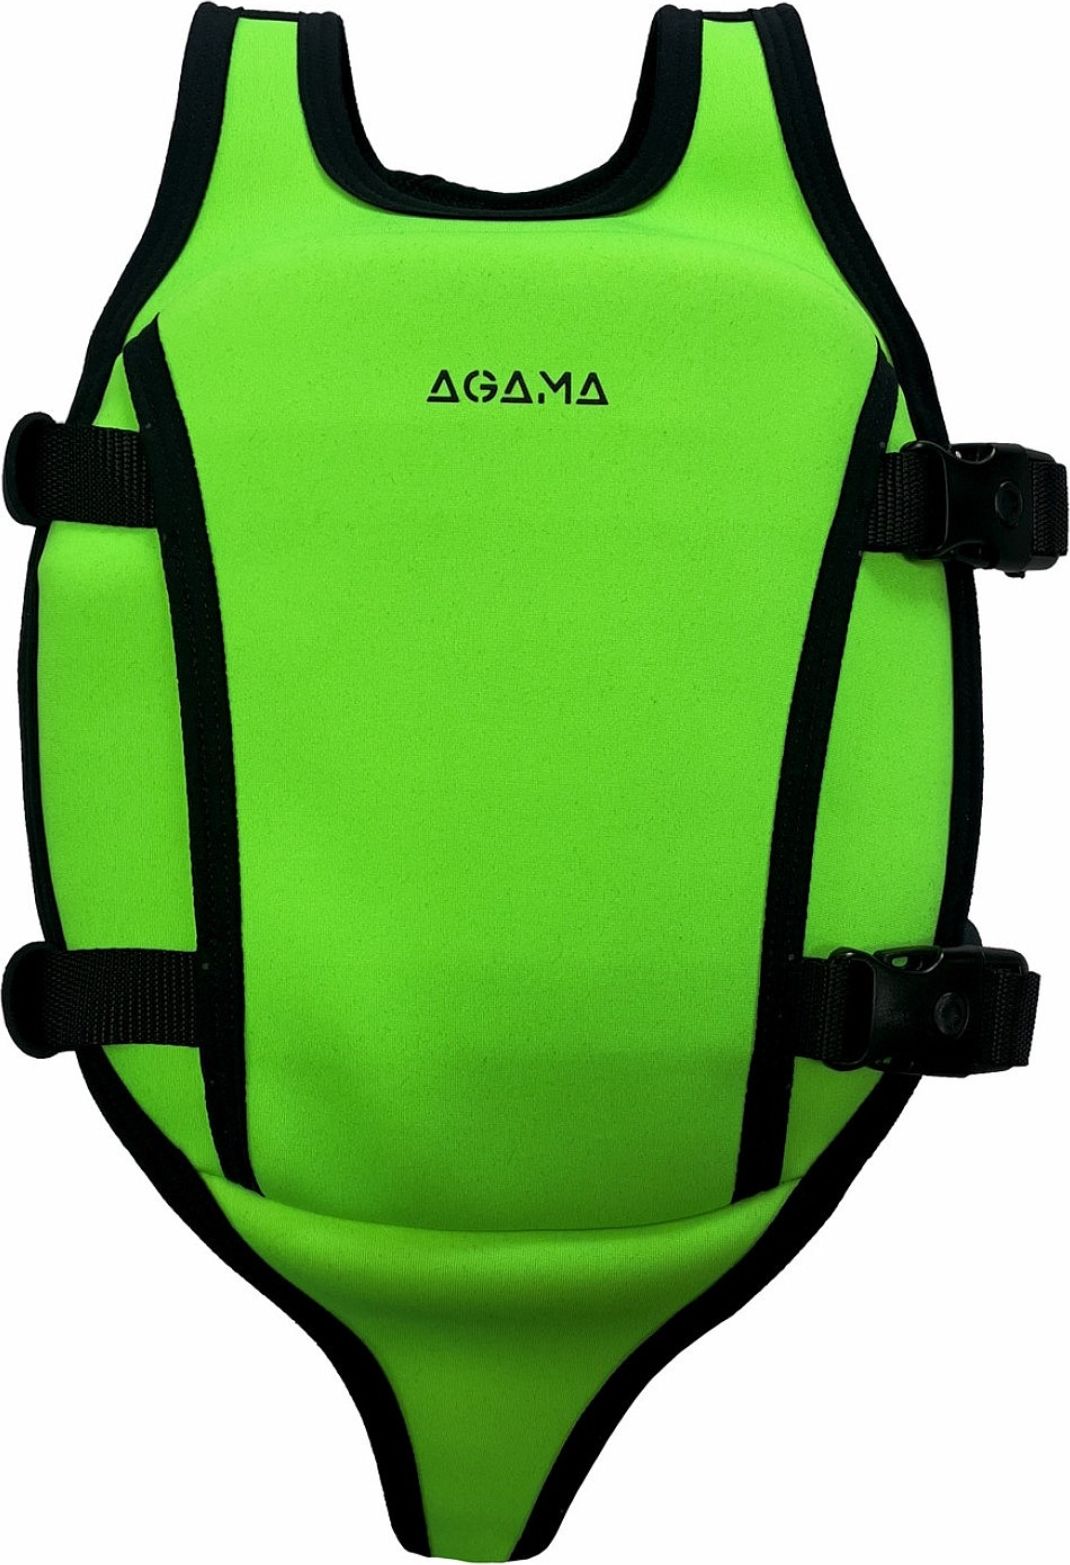 Plovací vesta AGAMA dětská zelená 3-6 (18-30 kg) - obrázek 1